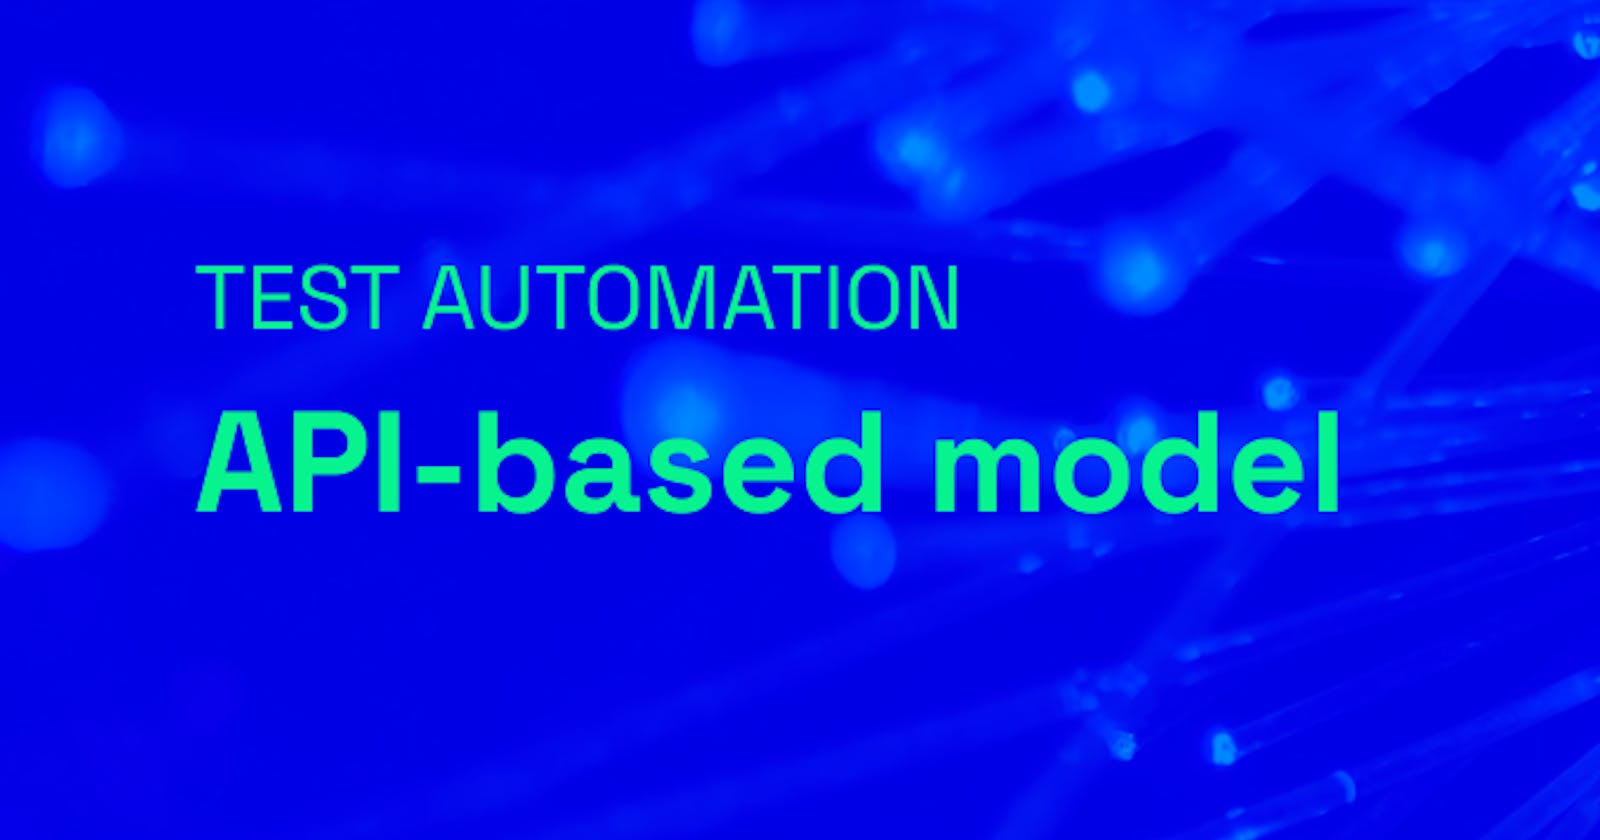 Test automation: API-based model